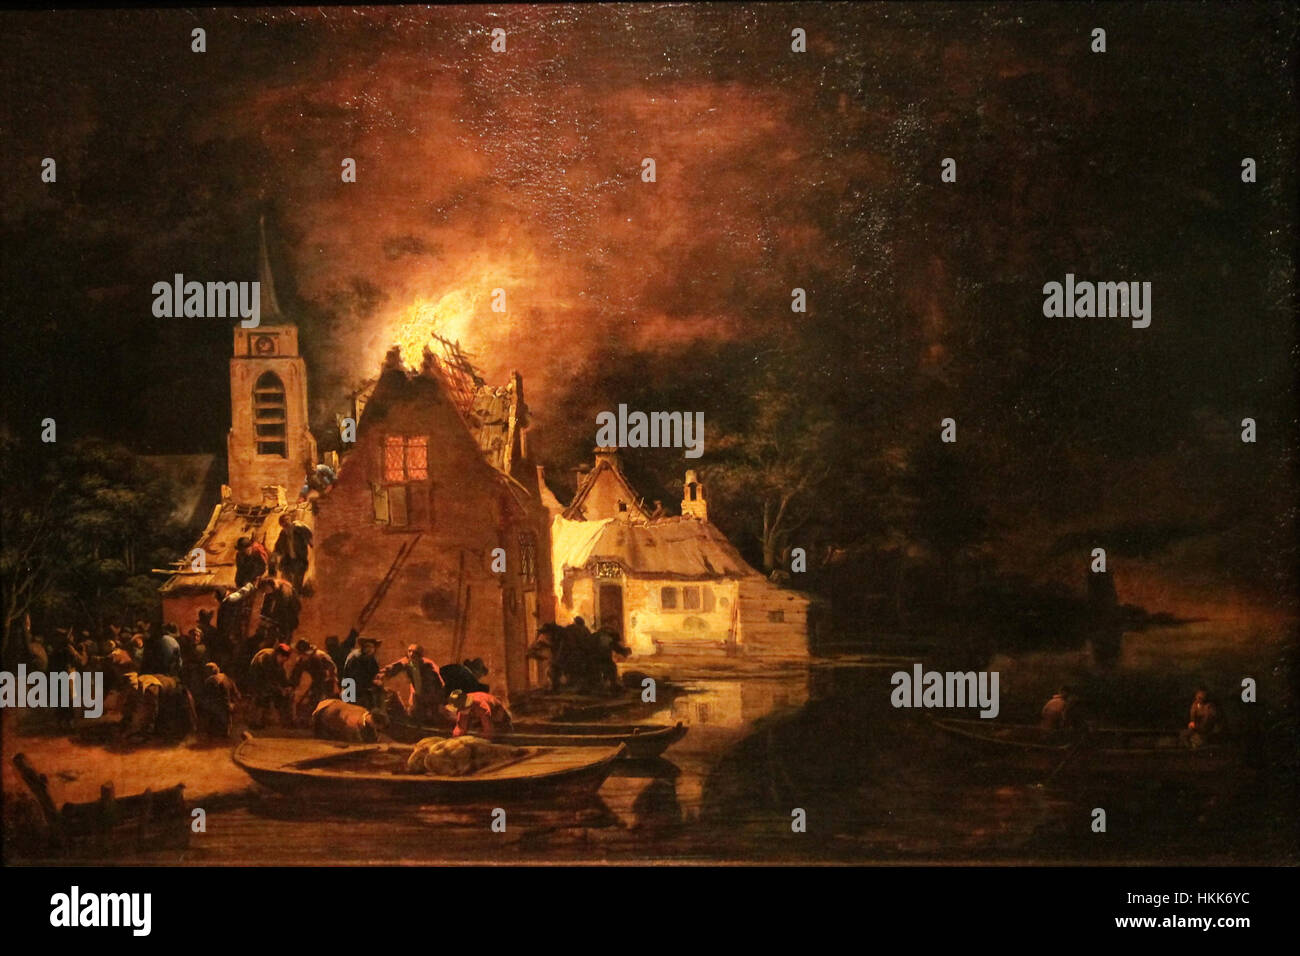 Un incendie dans la nuit (Egbert van der Poel) Banque D'Images